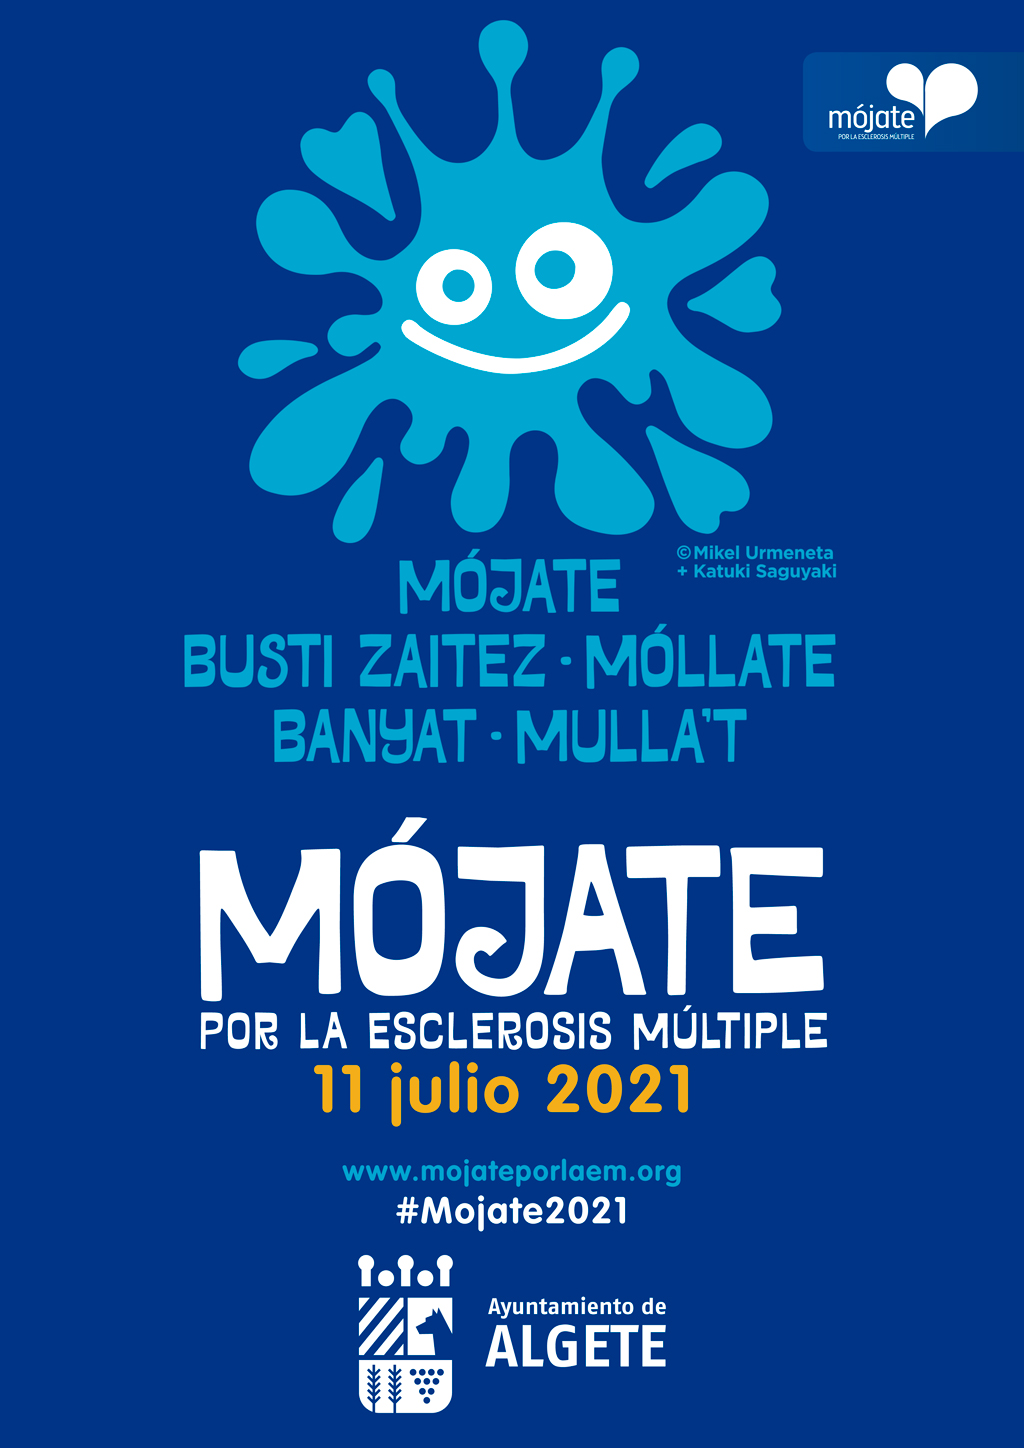 mojate2021 algete